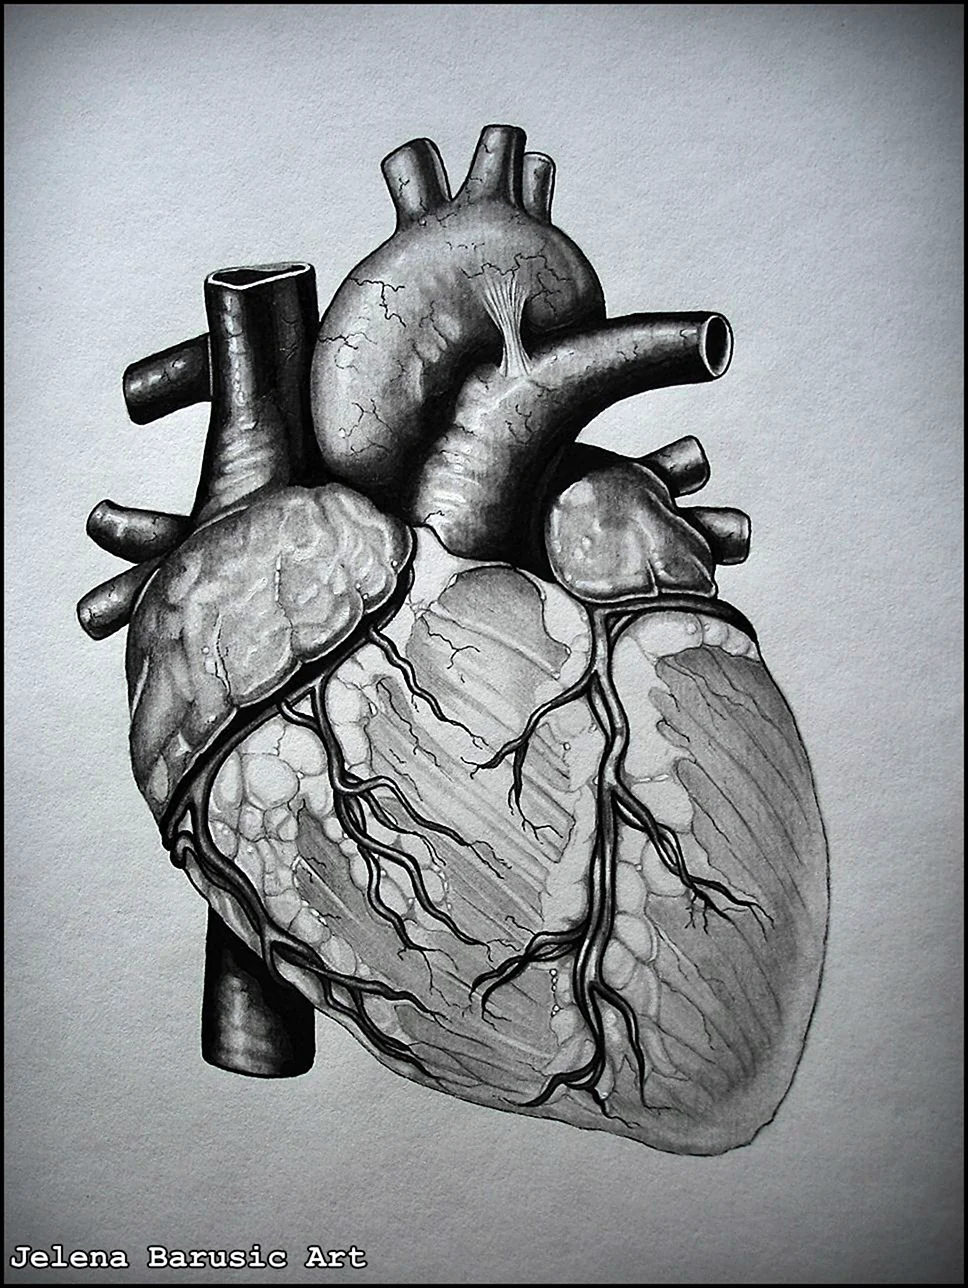 Человеческое сердце рисунок